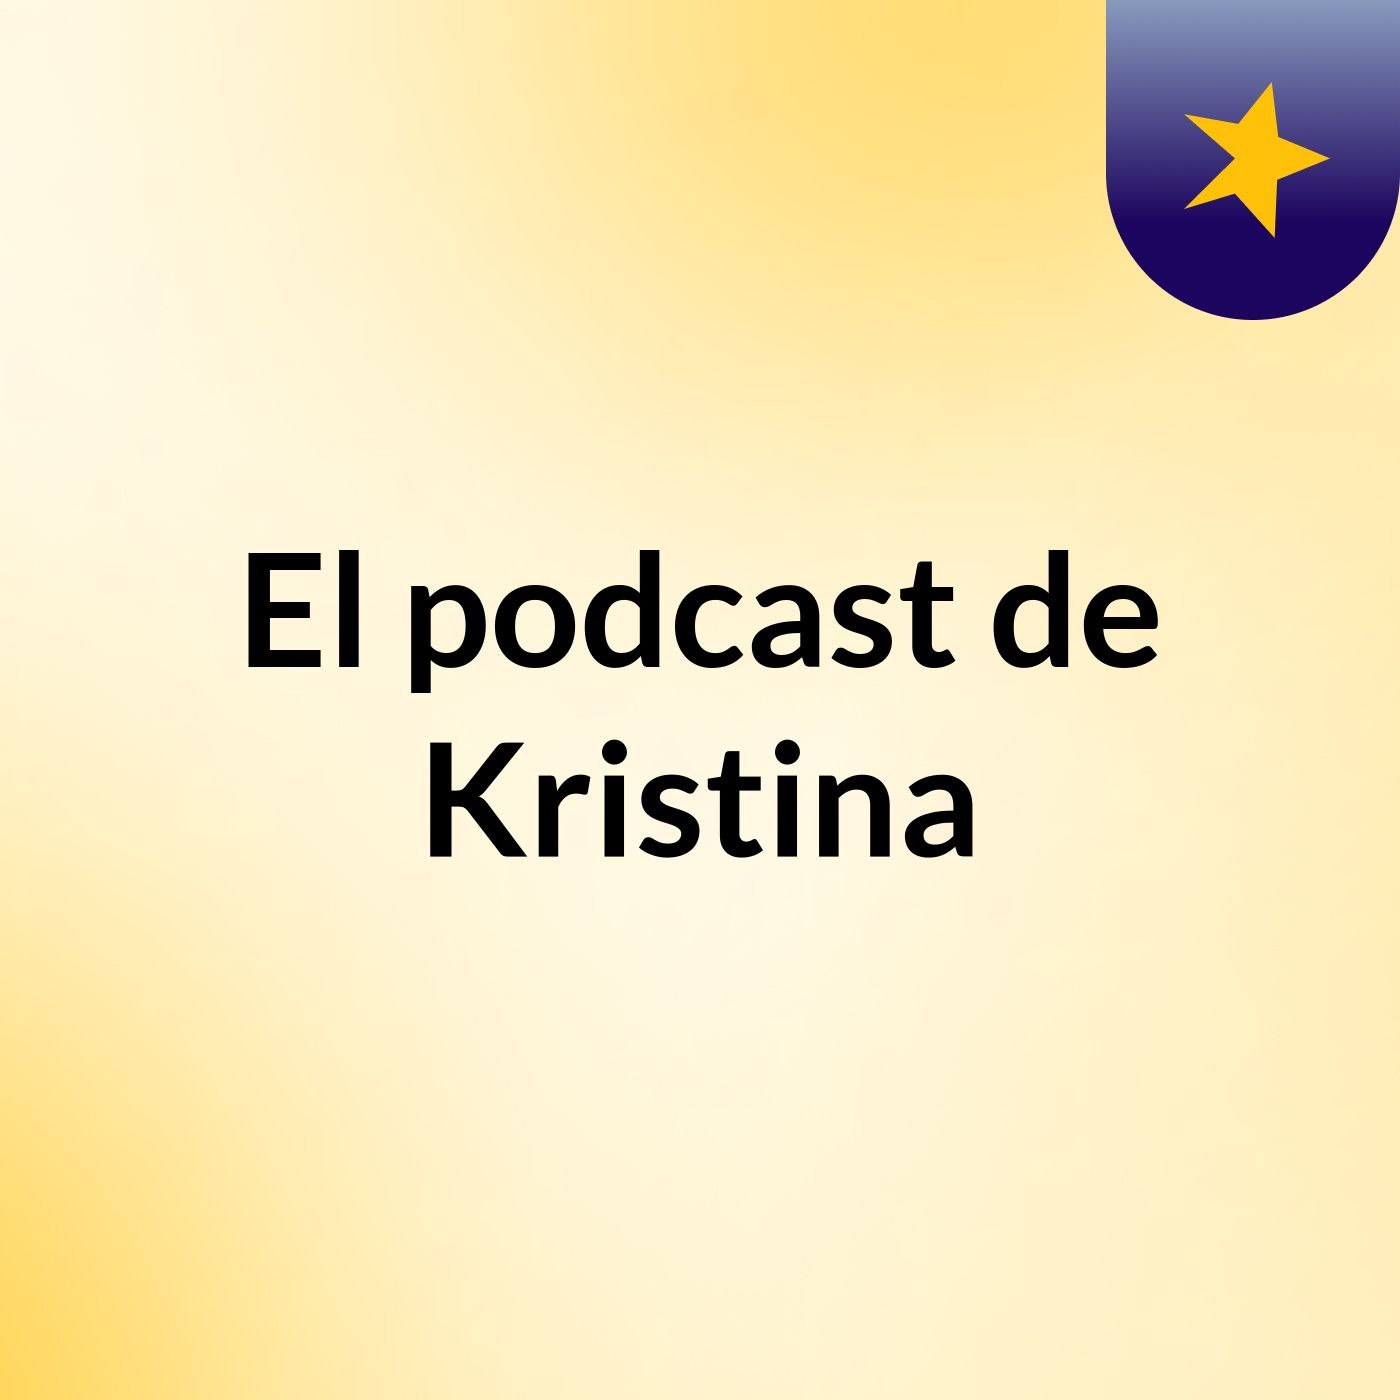 El podcast de Kristina